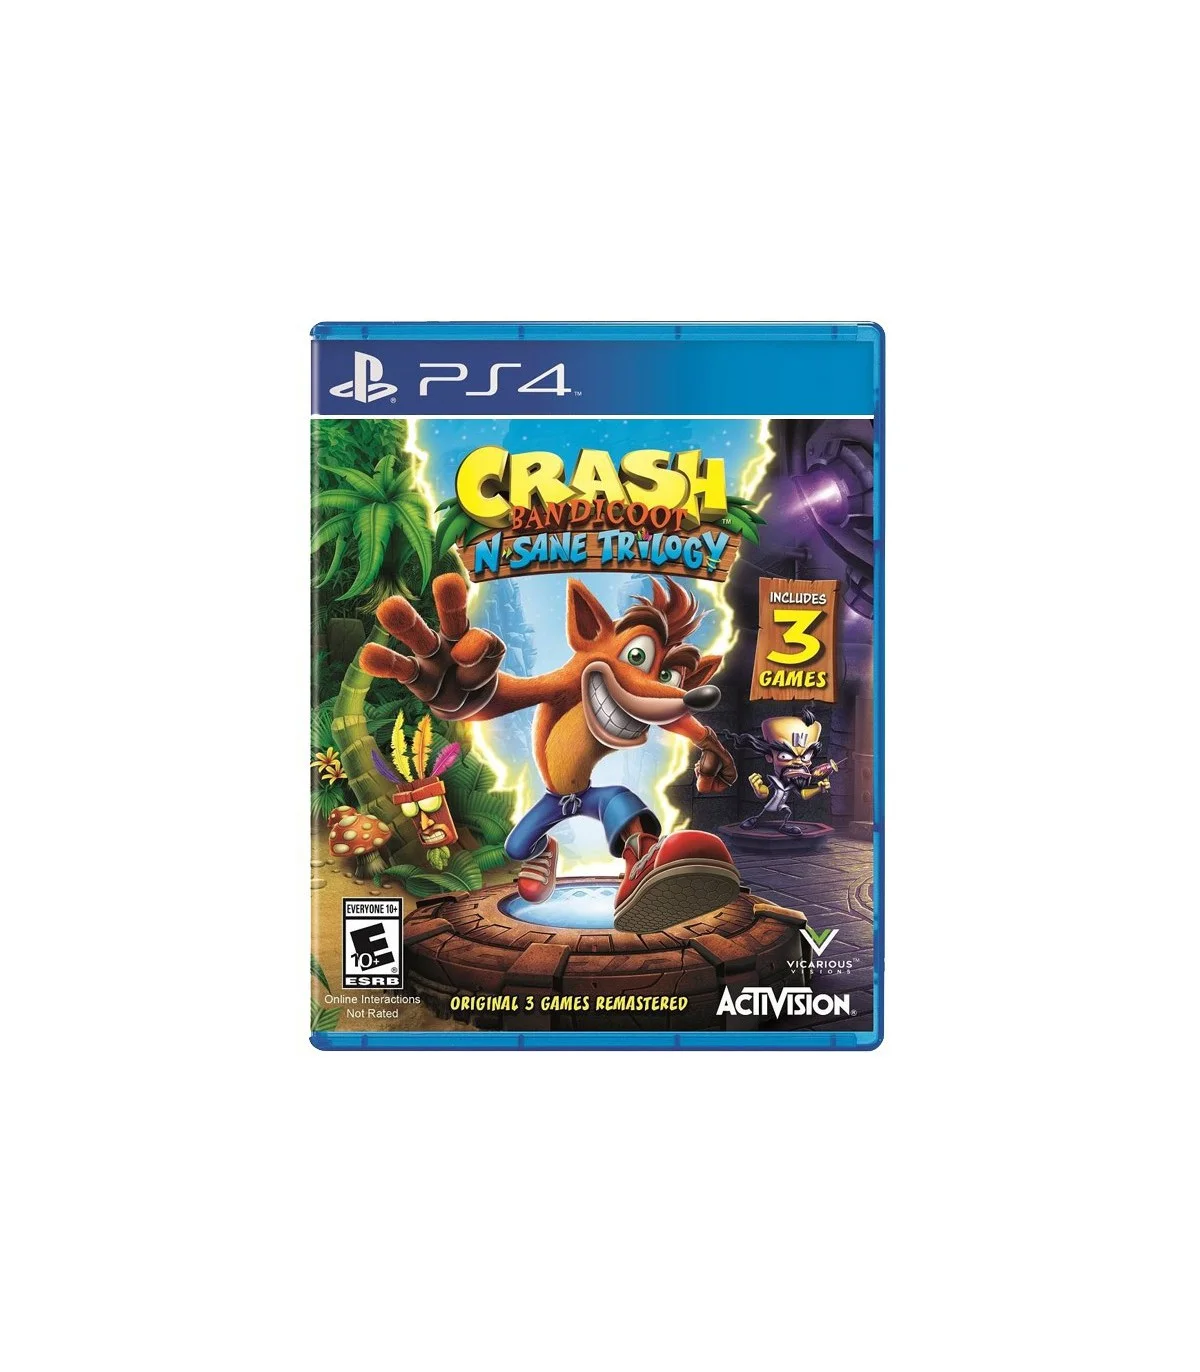 بازی Crash Bandicoot N. Sane Trilogy